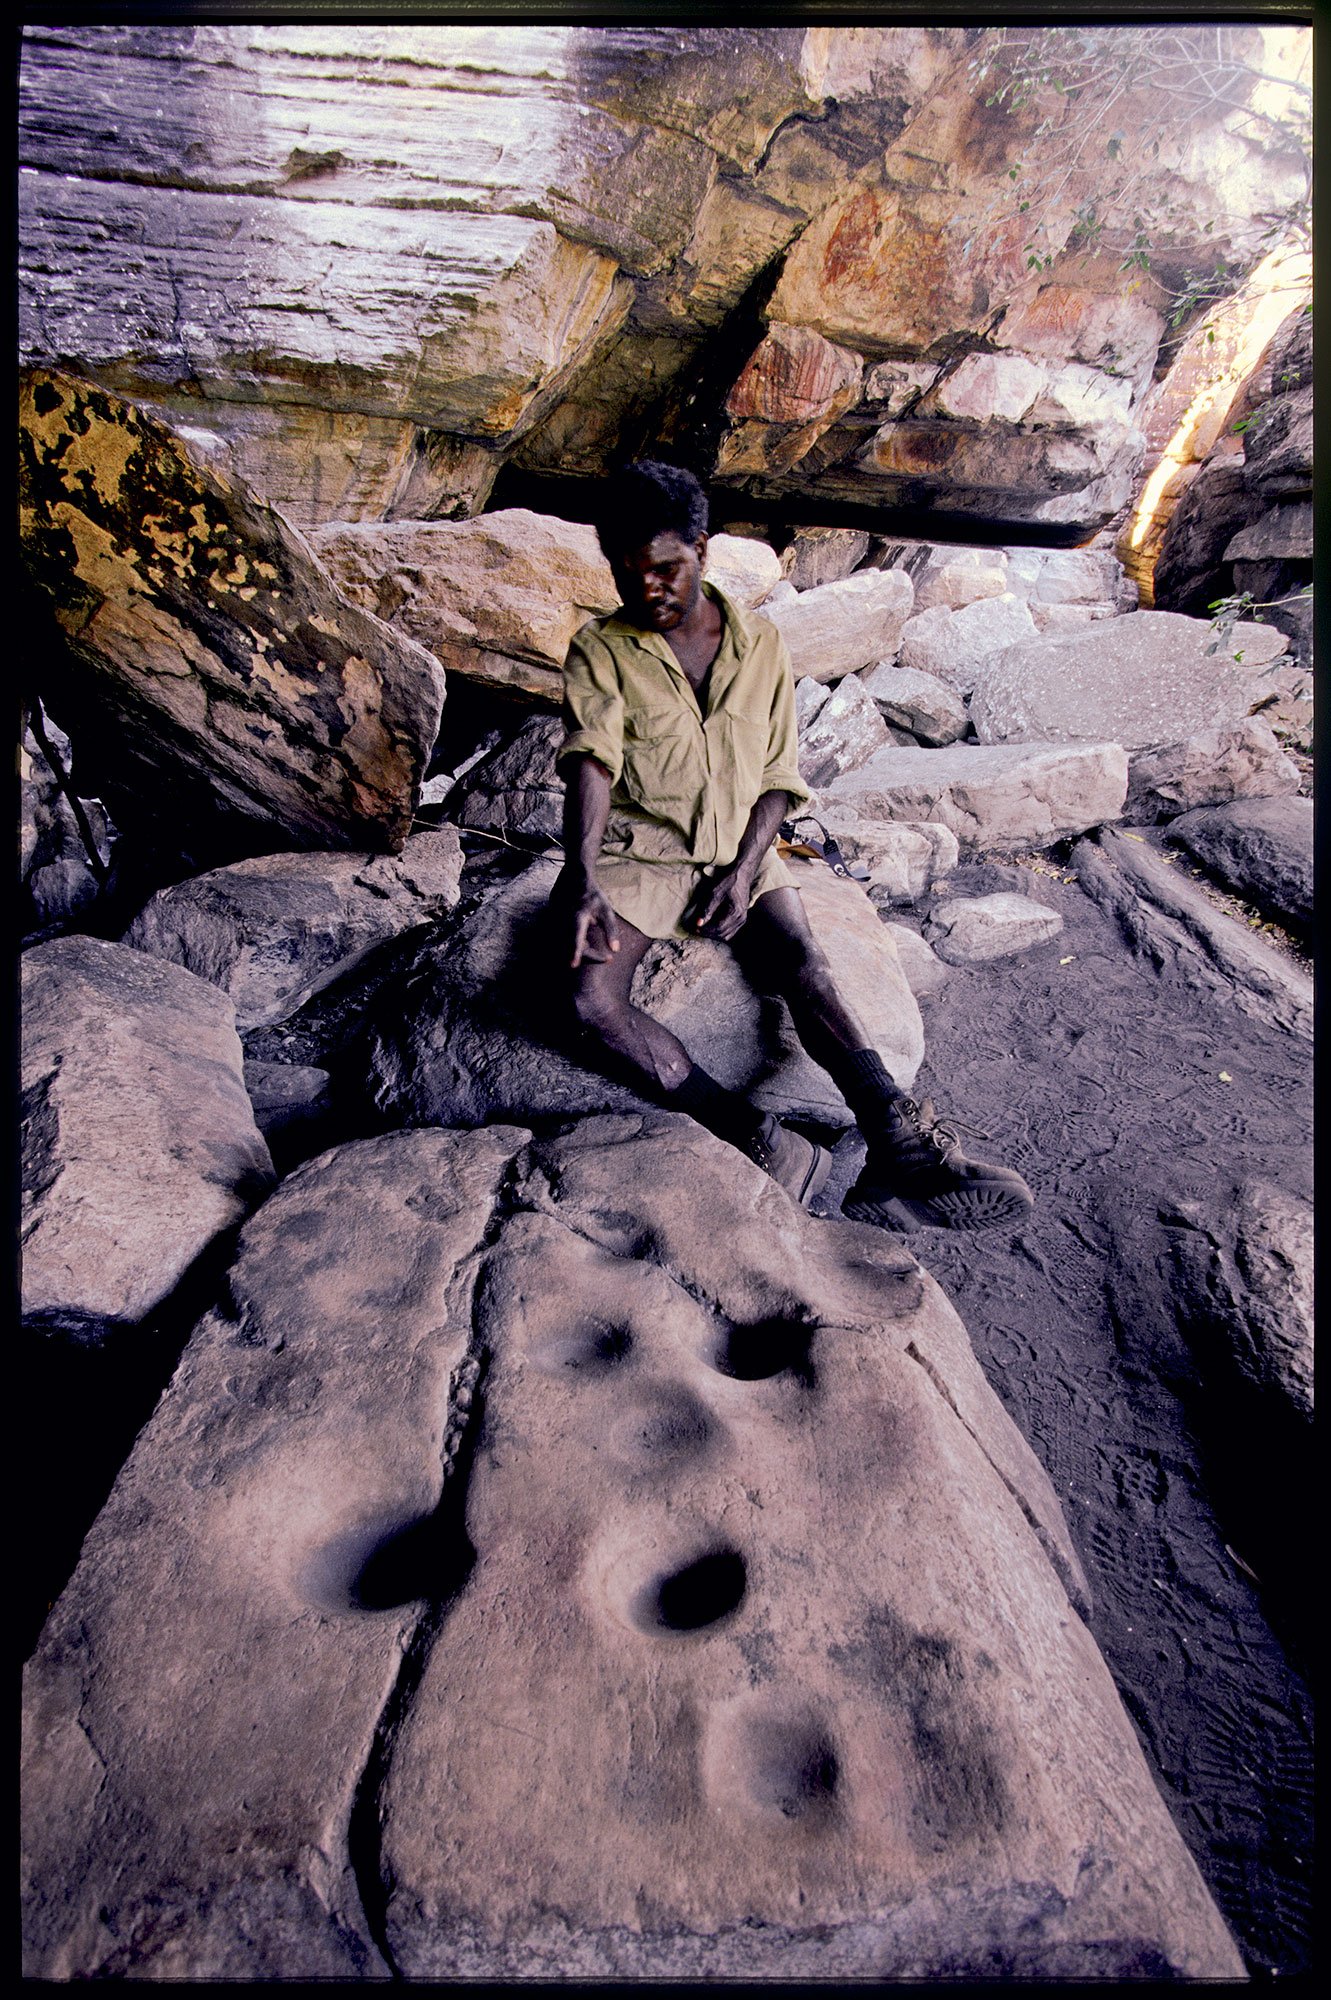 gunbalunya, northern territory 1997